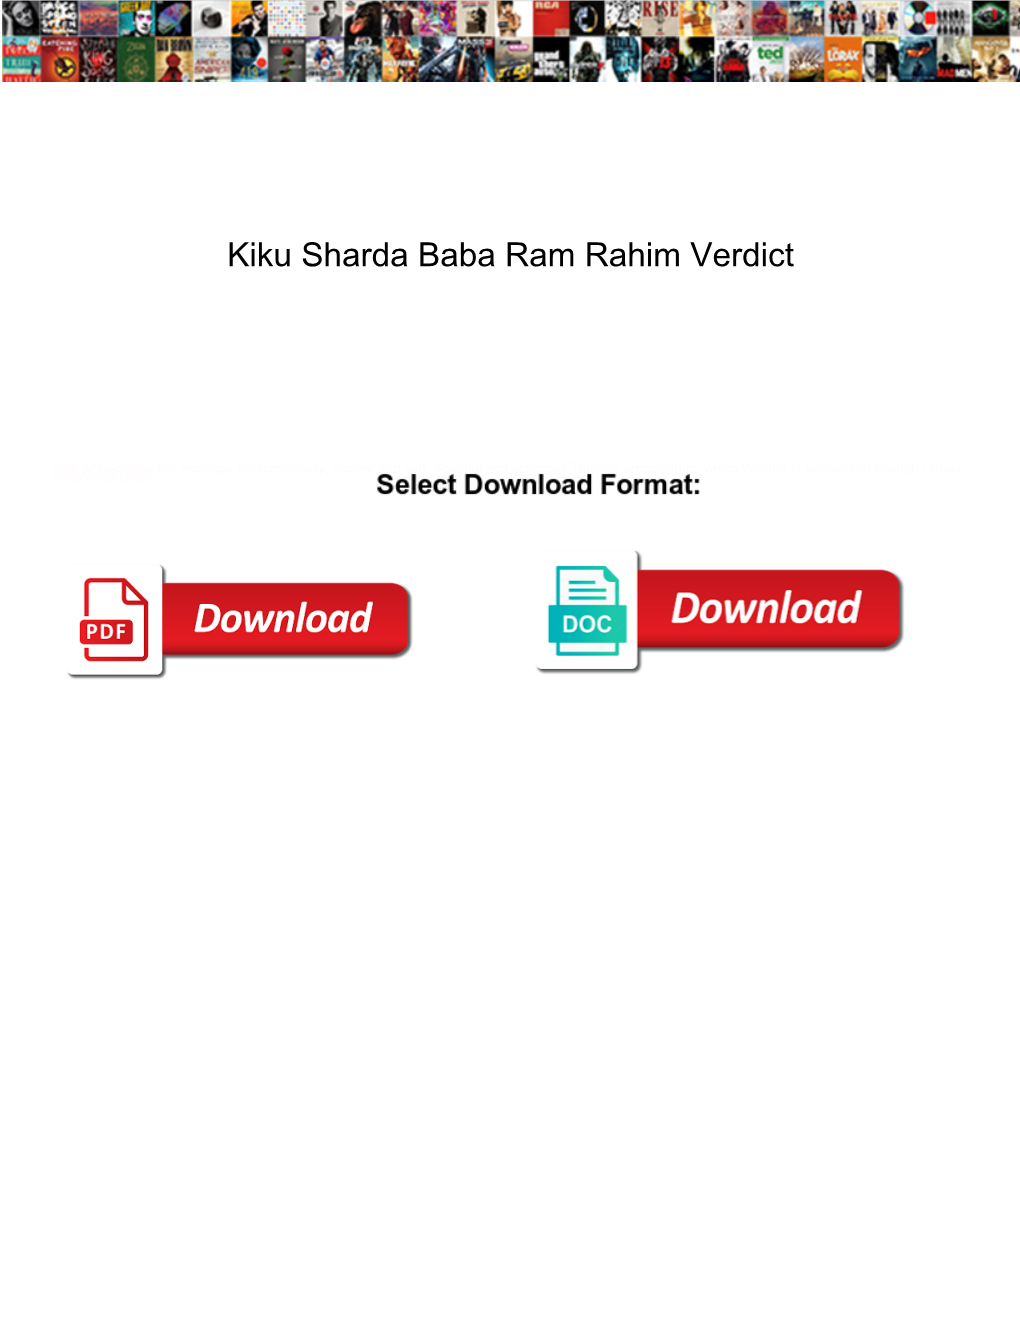 Kiku Sharda Baba Ram Rahim Verdict